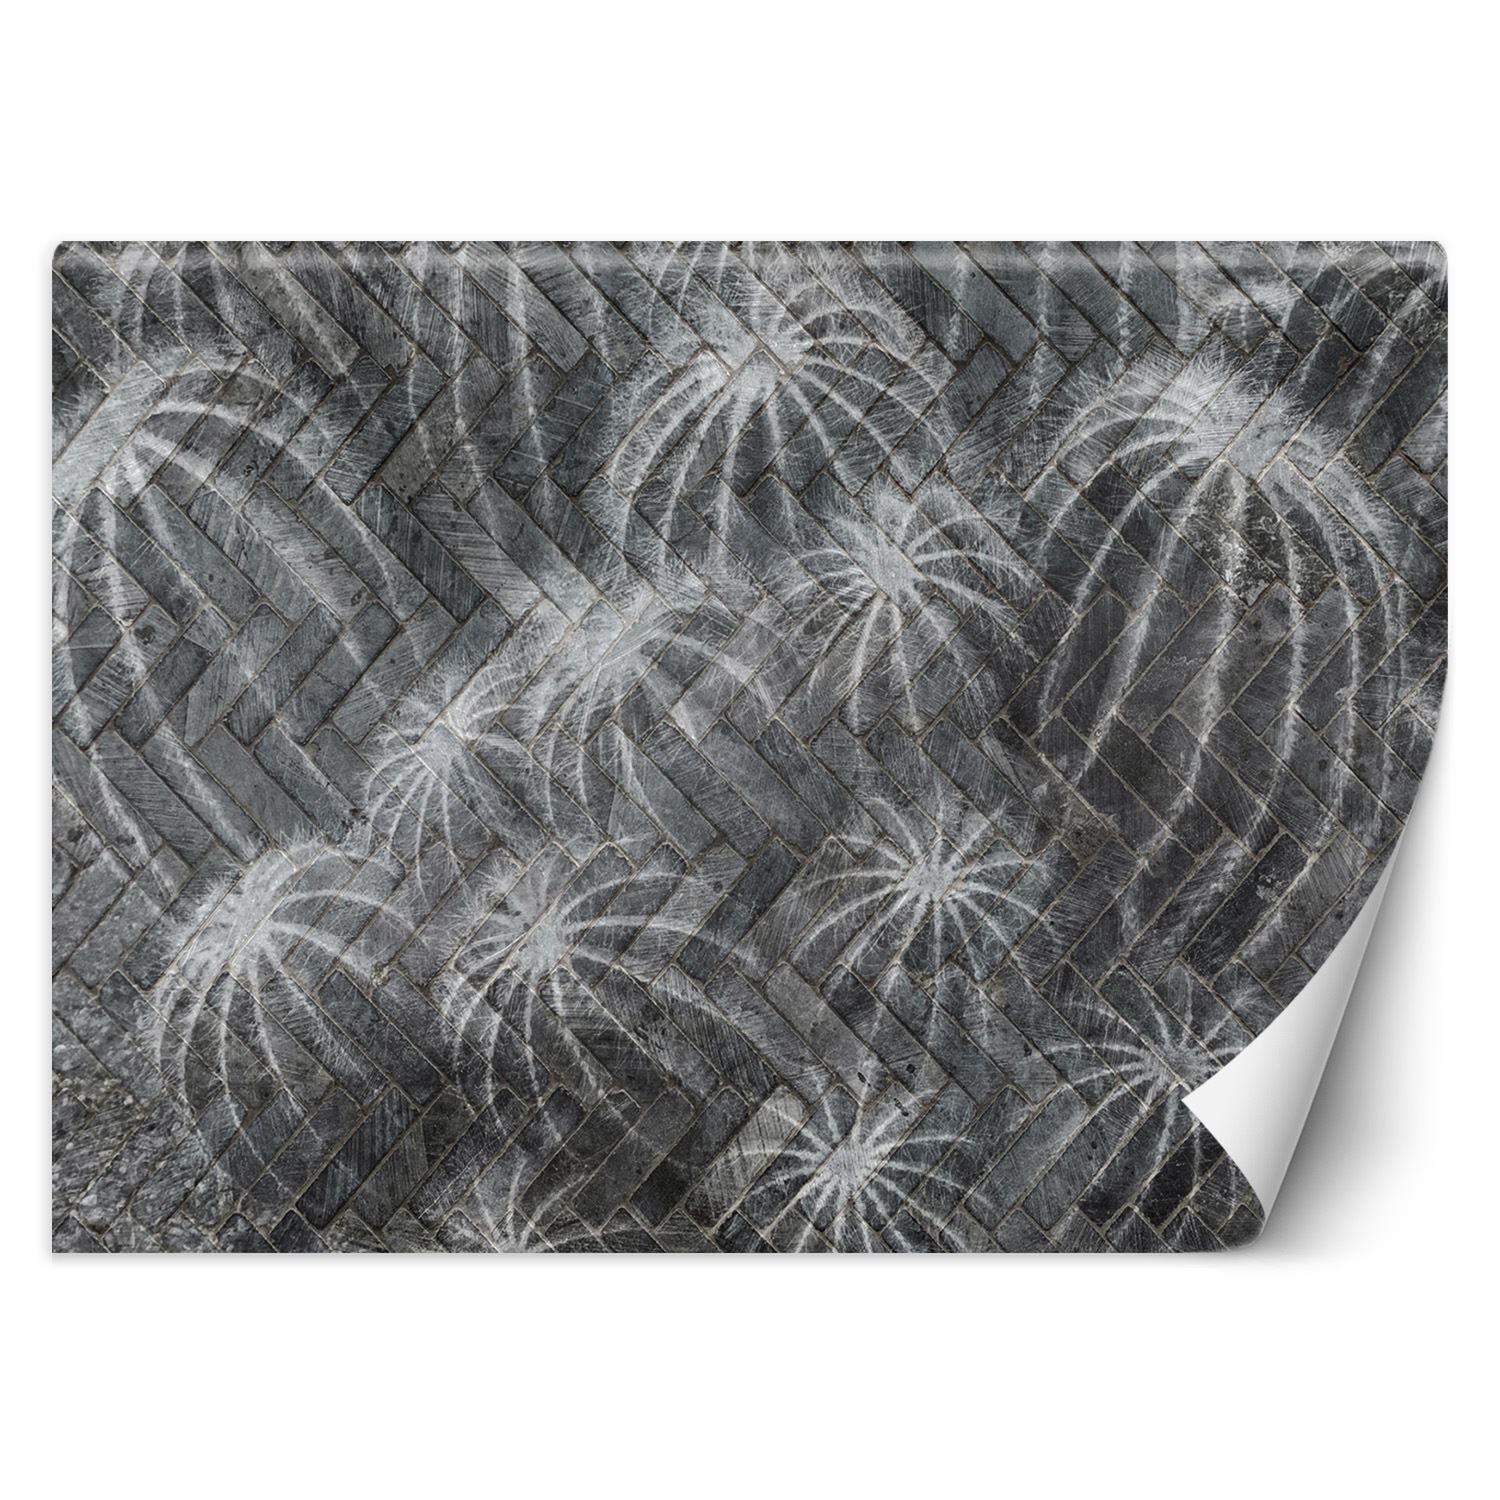 Trend24 – Behang – Cactussen In Grijs – Behangpapier – Behang Woonkamer – Fotobehang – 200x140x2 cm – Incl. behanglijm